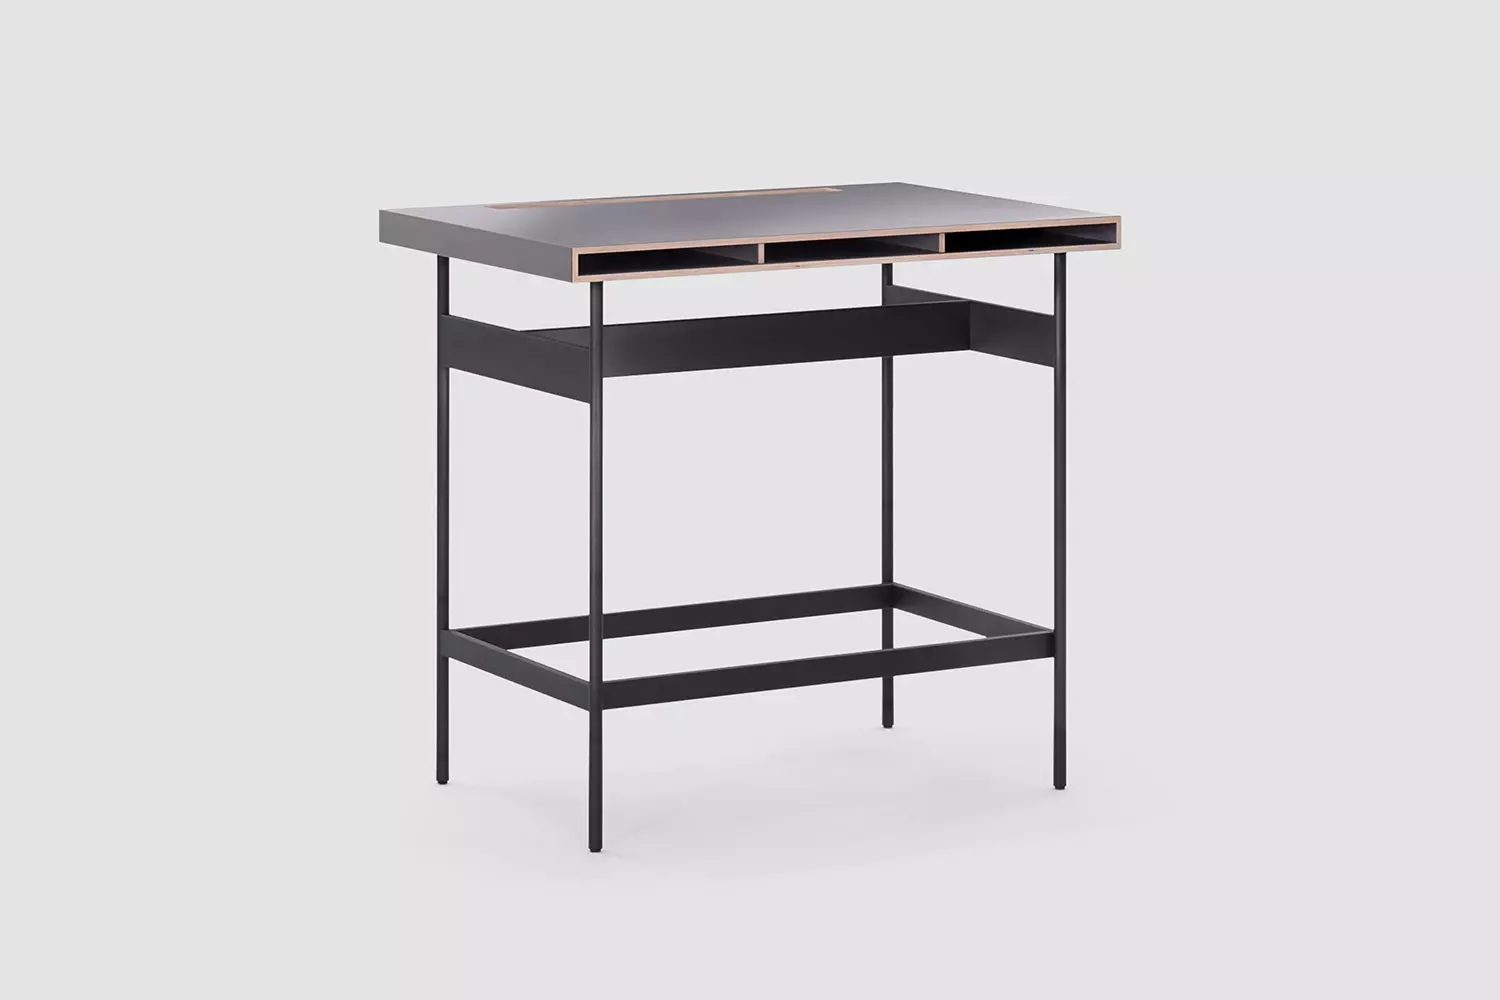 studio-high, Premium Hauteur debout Table de séminaire Bureau / plan de travail, meubles de bureau Bene, Image 1